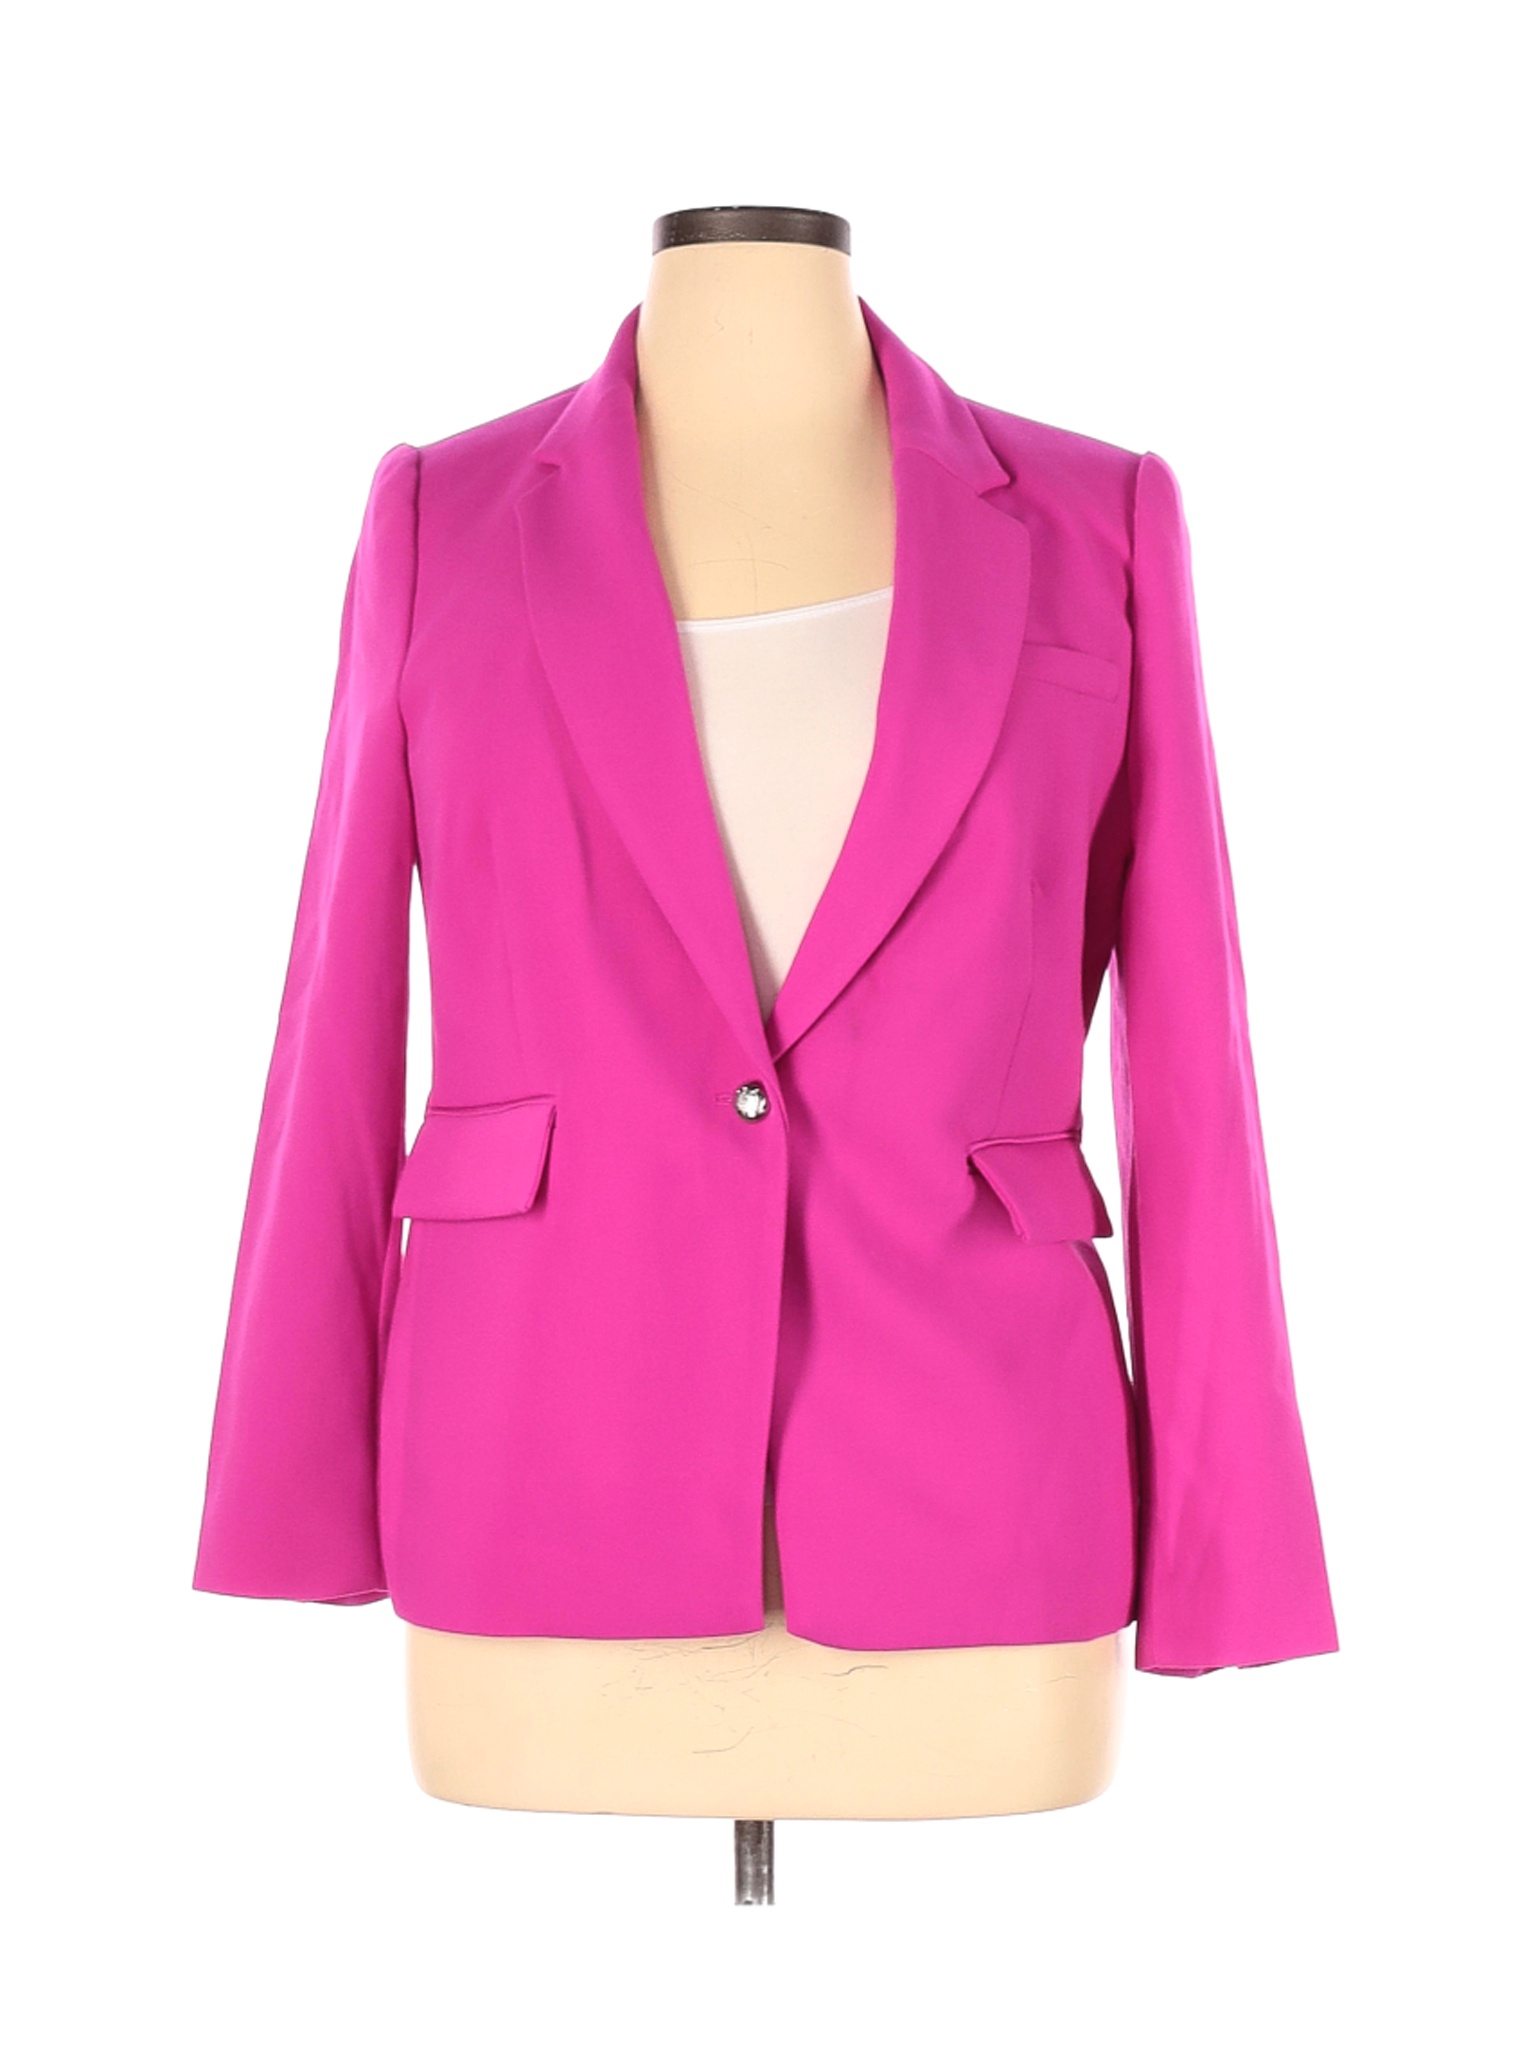 Vince Camuto Women Pink Blazer 14 | eBay